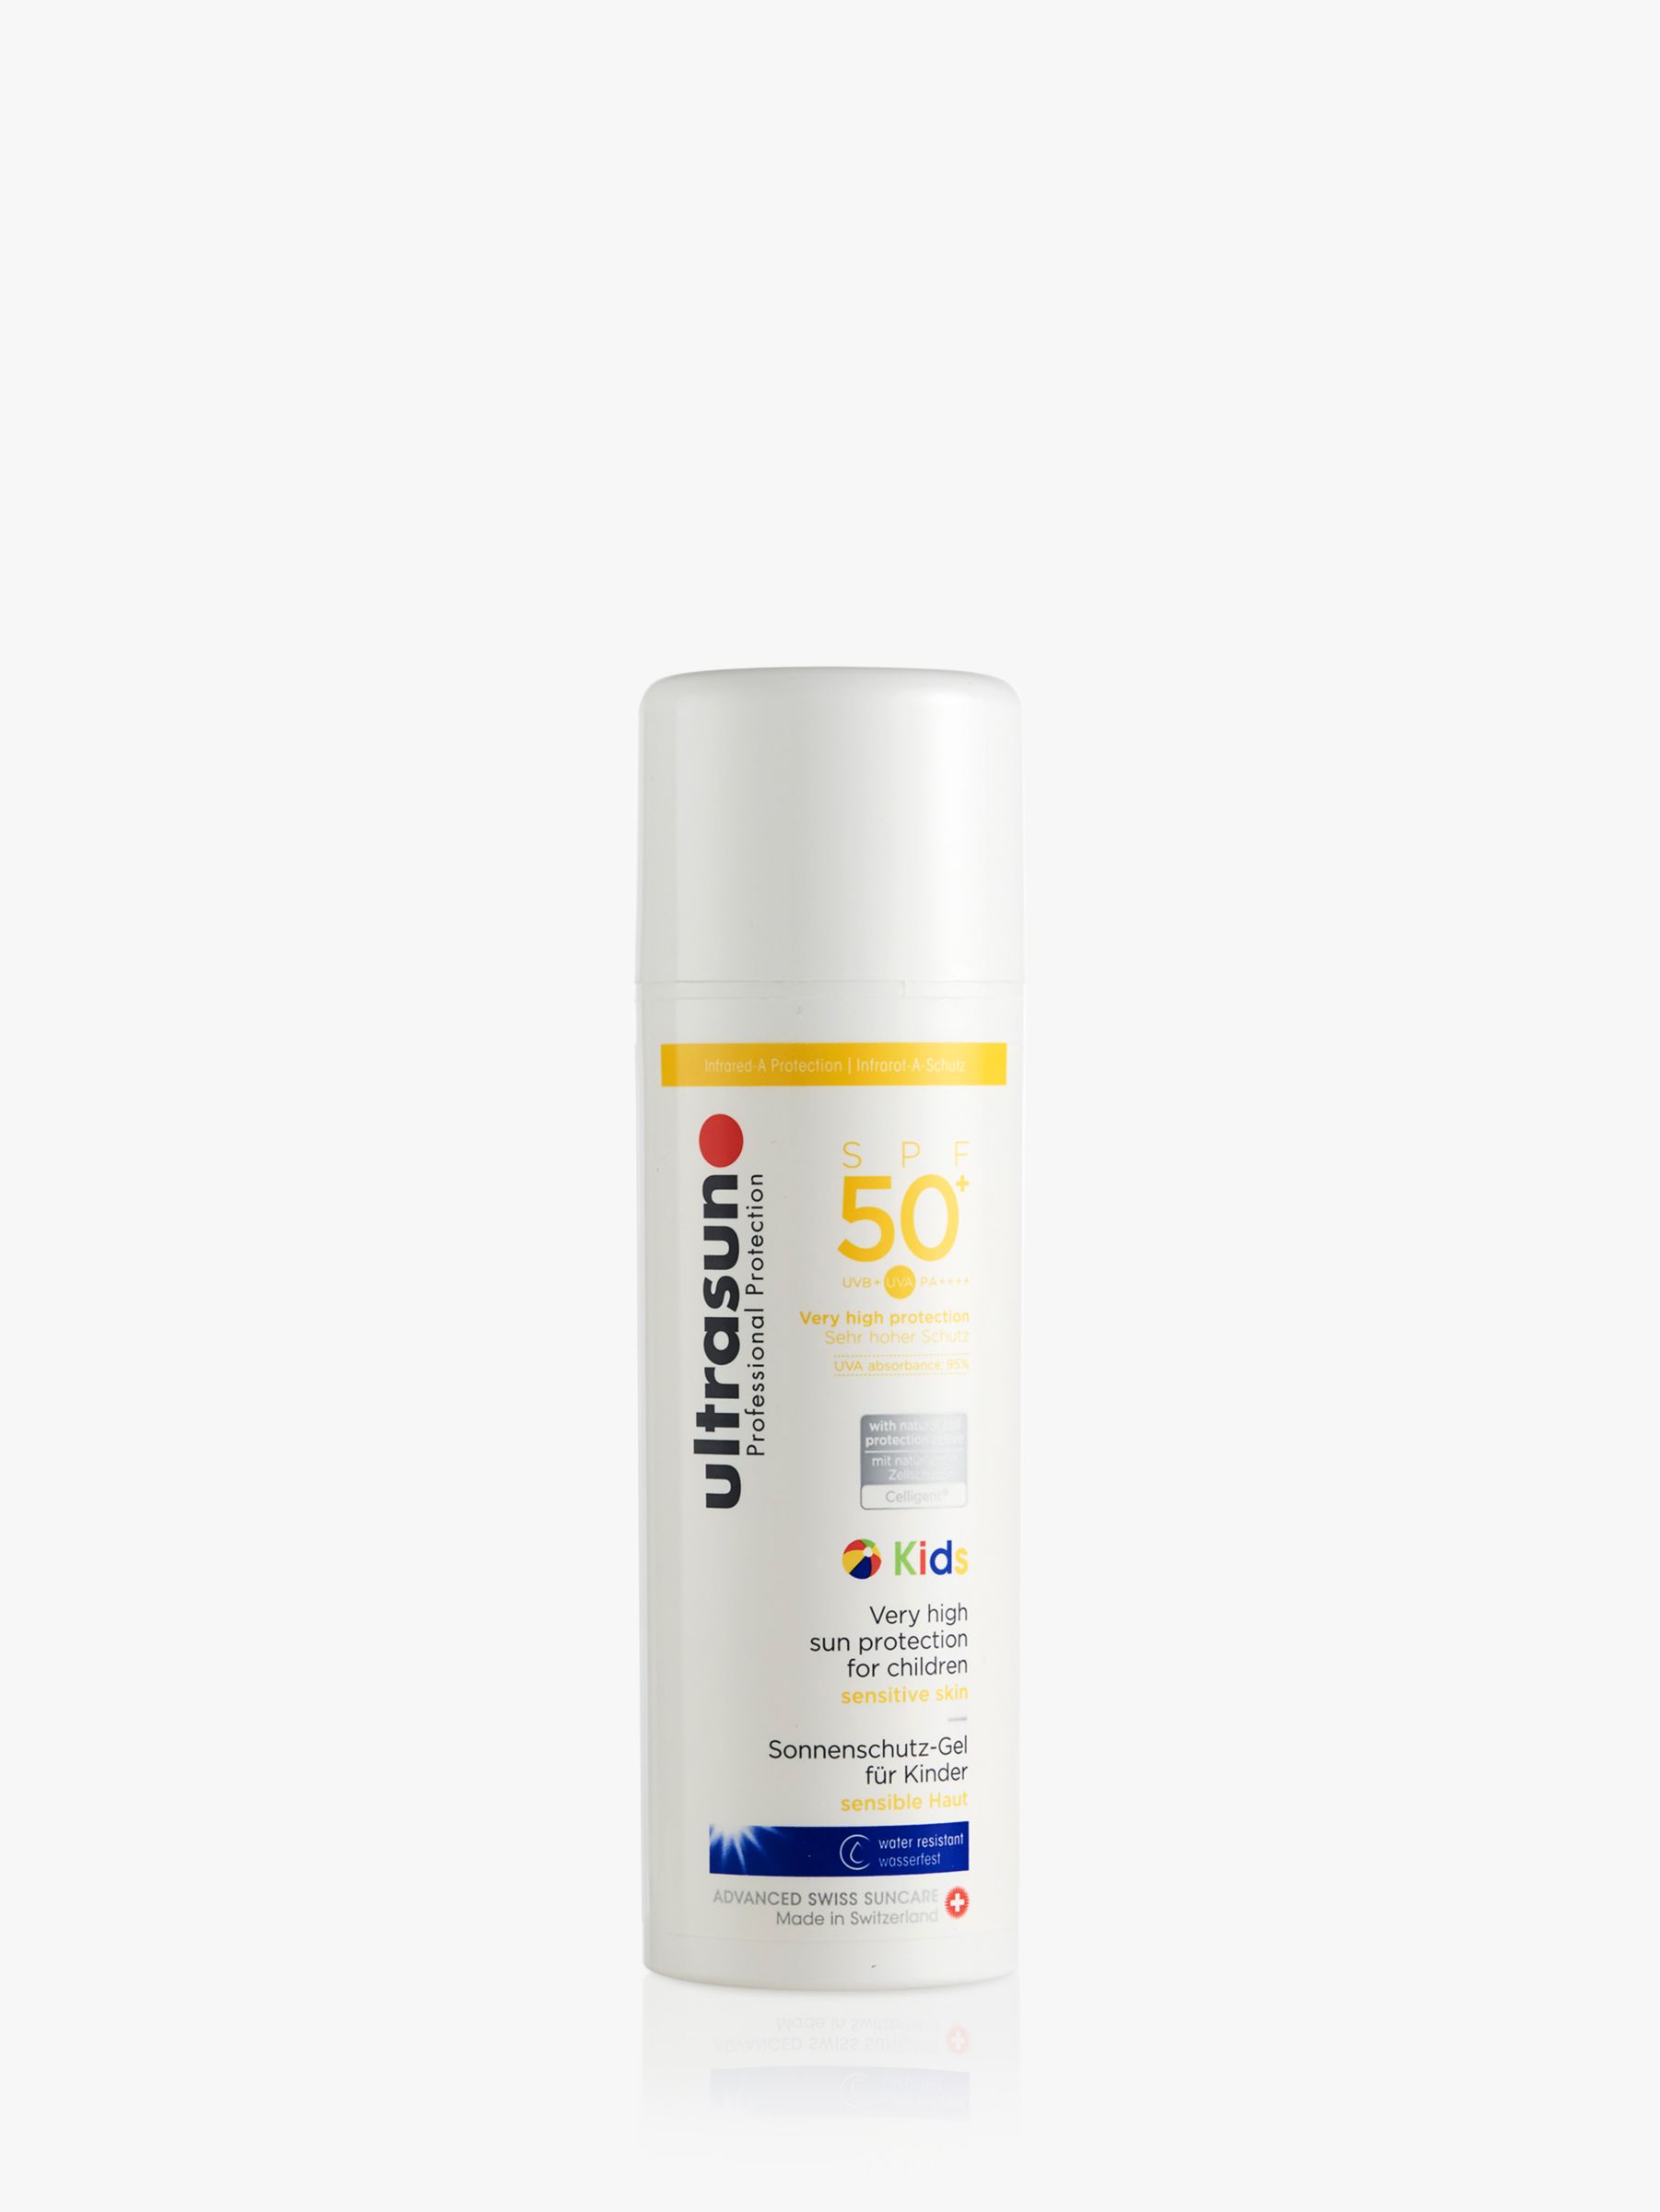 Ultrasun Kids SPF 50+ High Protection For Children Sun Cream, 150ml 2